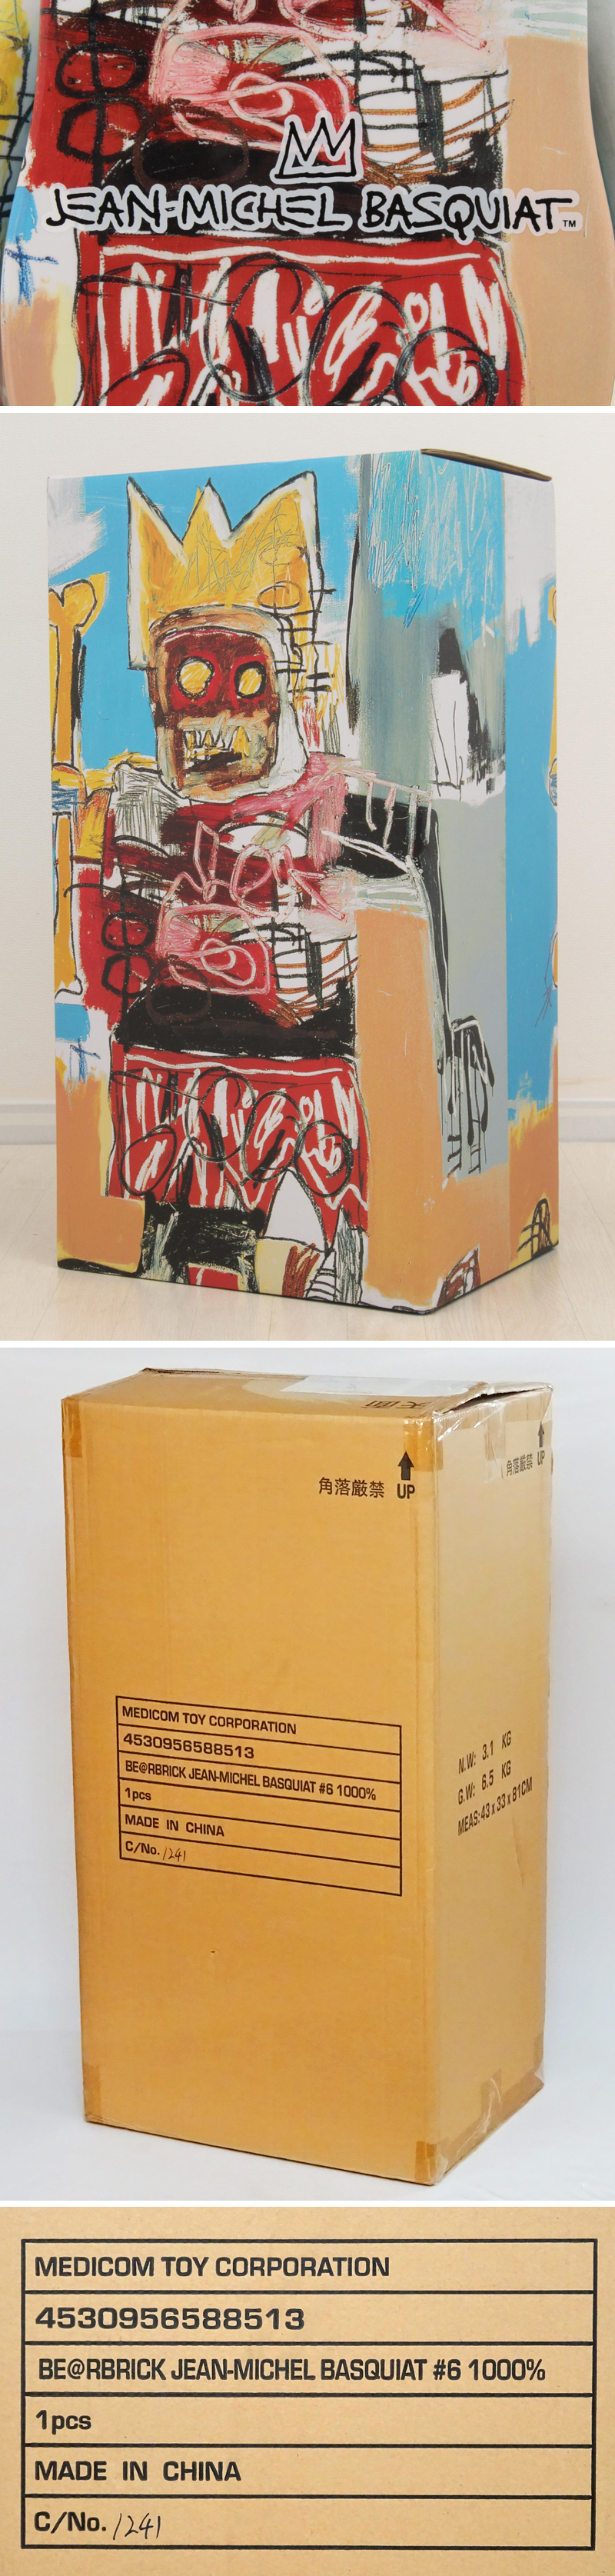 大阪店舗BE@RBRICK ベアブリック バスキア Jean-Michel Basquiat #6 1000% ◆大幅値下げ!! キューブリック、ベアブリック